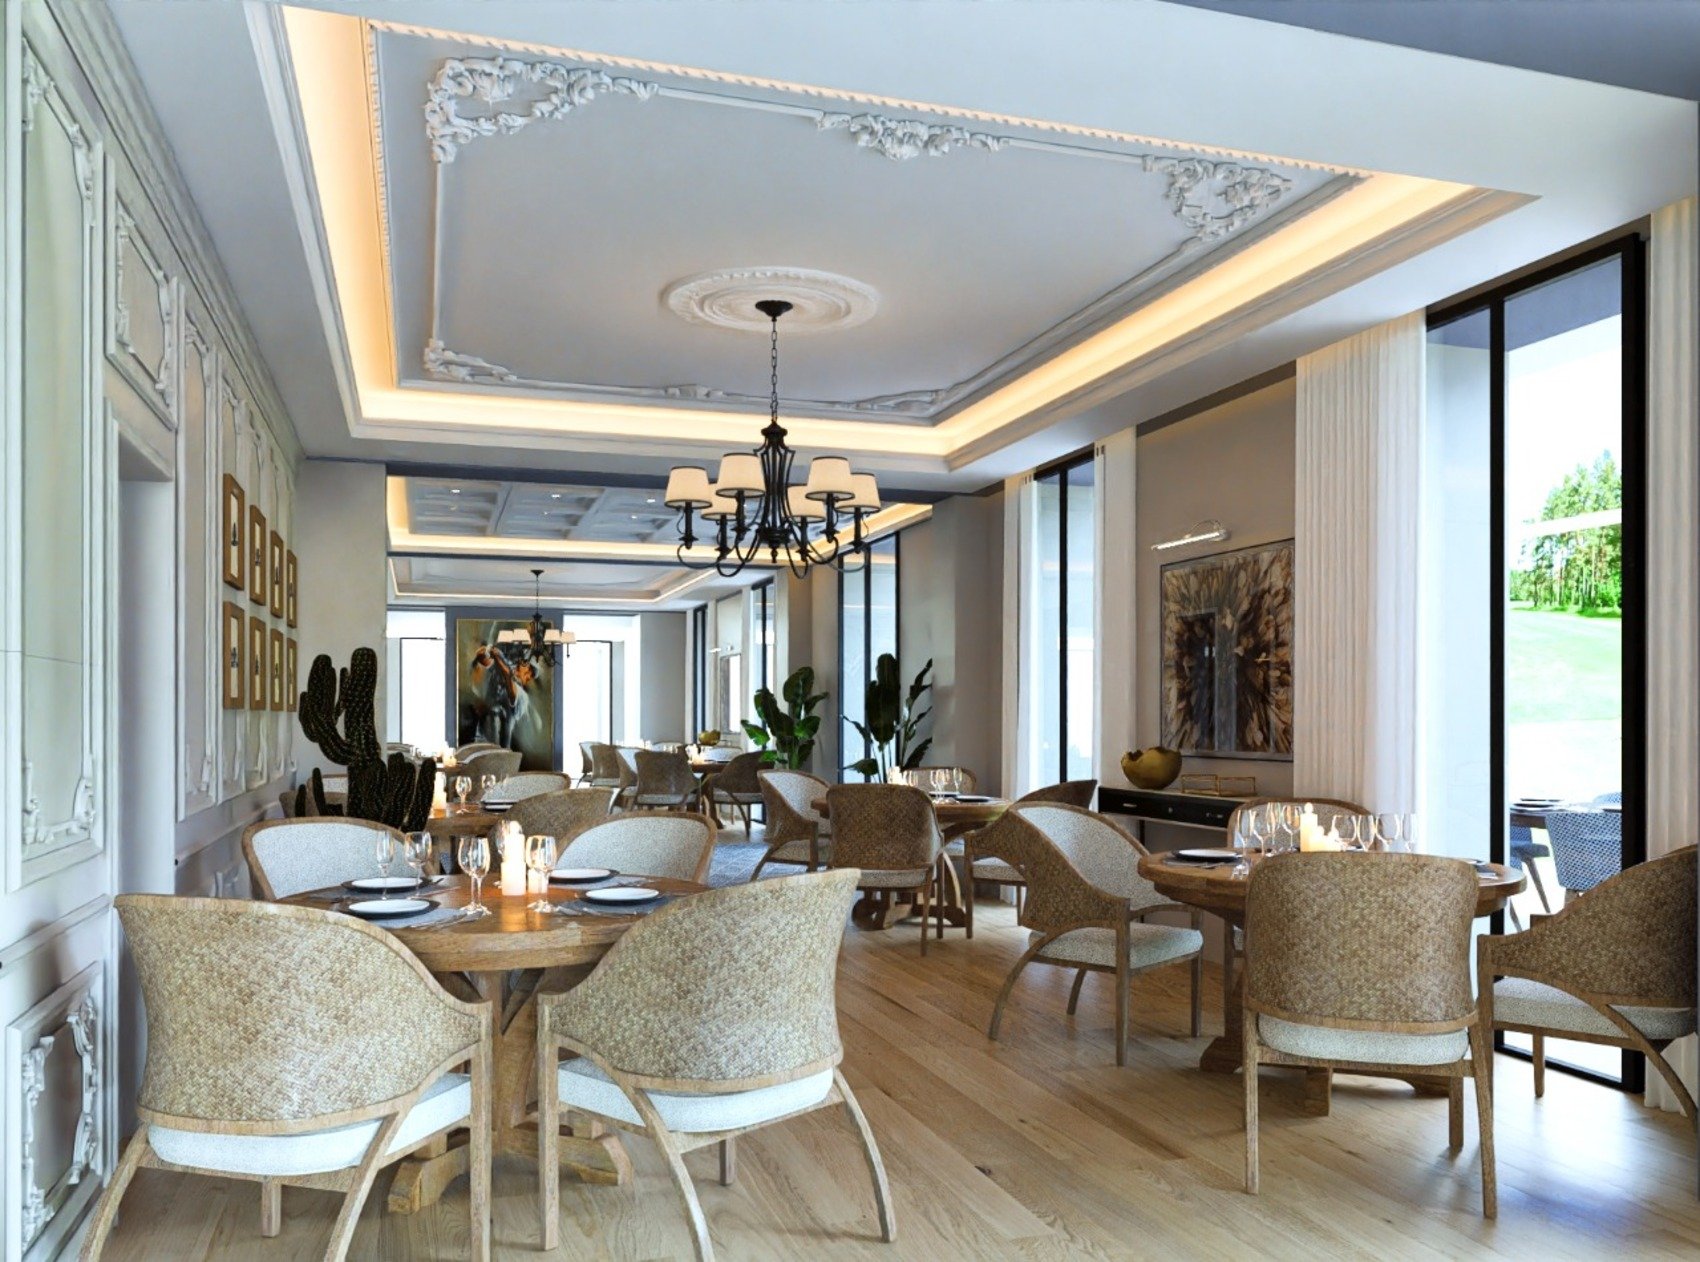 boutique hôtel Domaine de Rochebois 5 étoiles Périgord Vitrac Dordogne restaurant chef Jean-Philippe Vecco